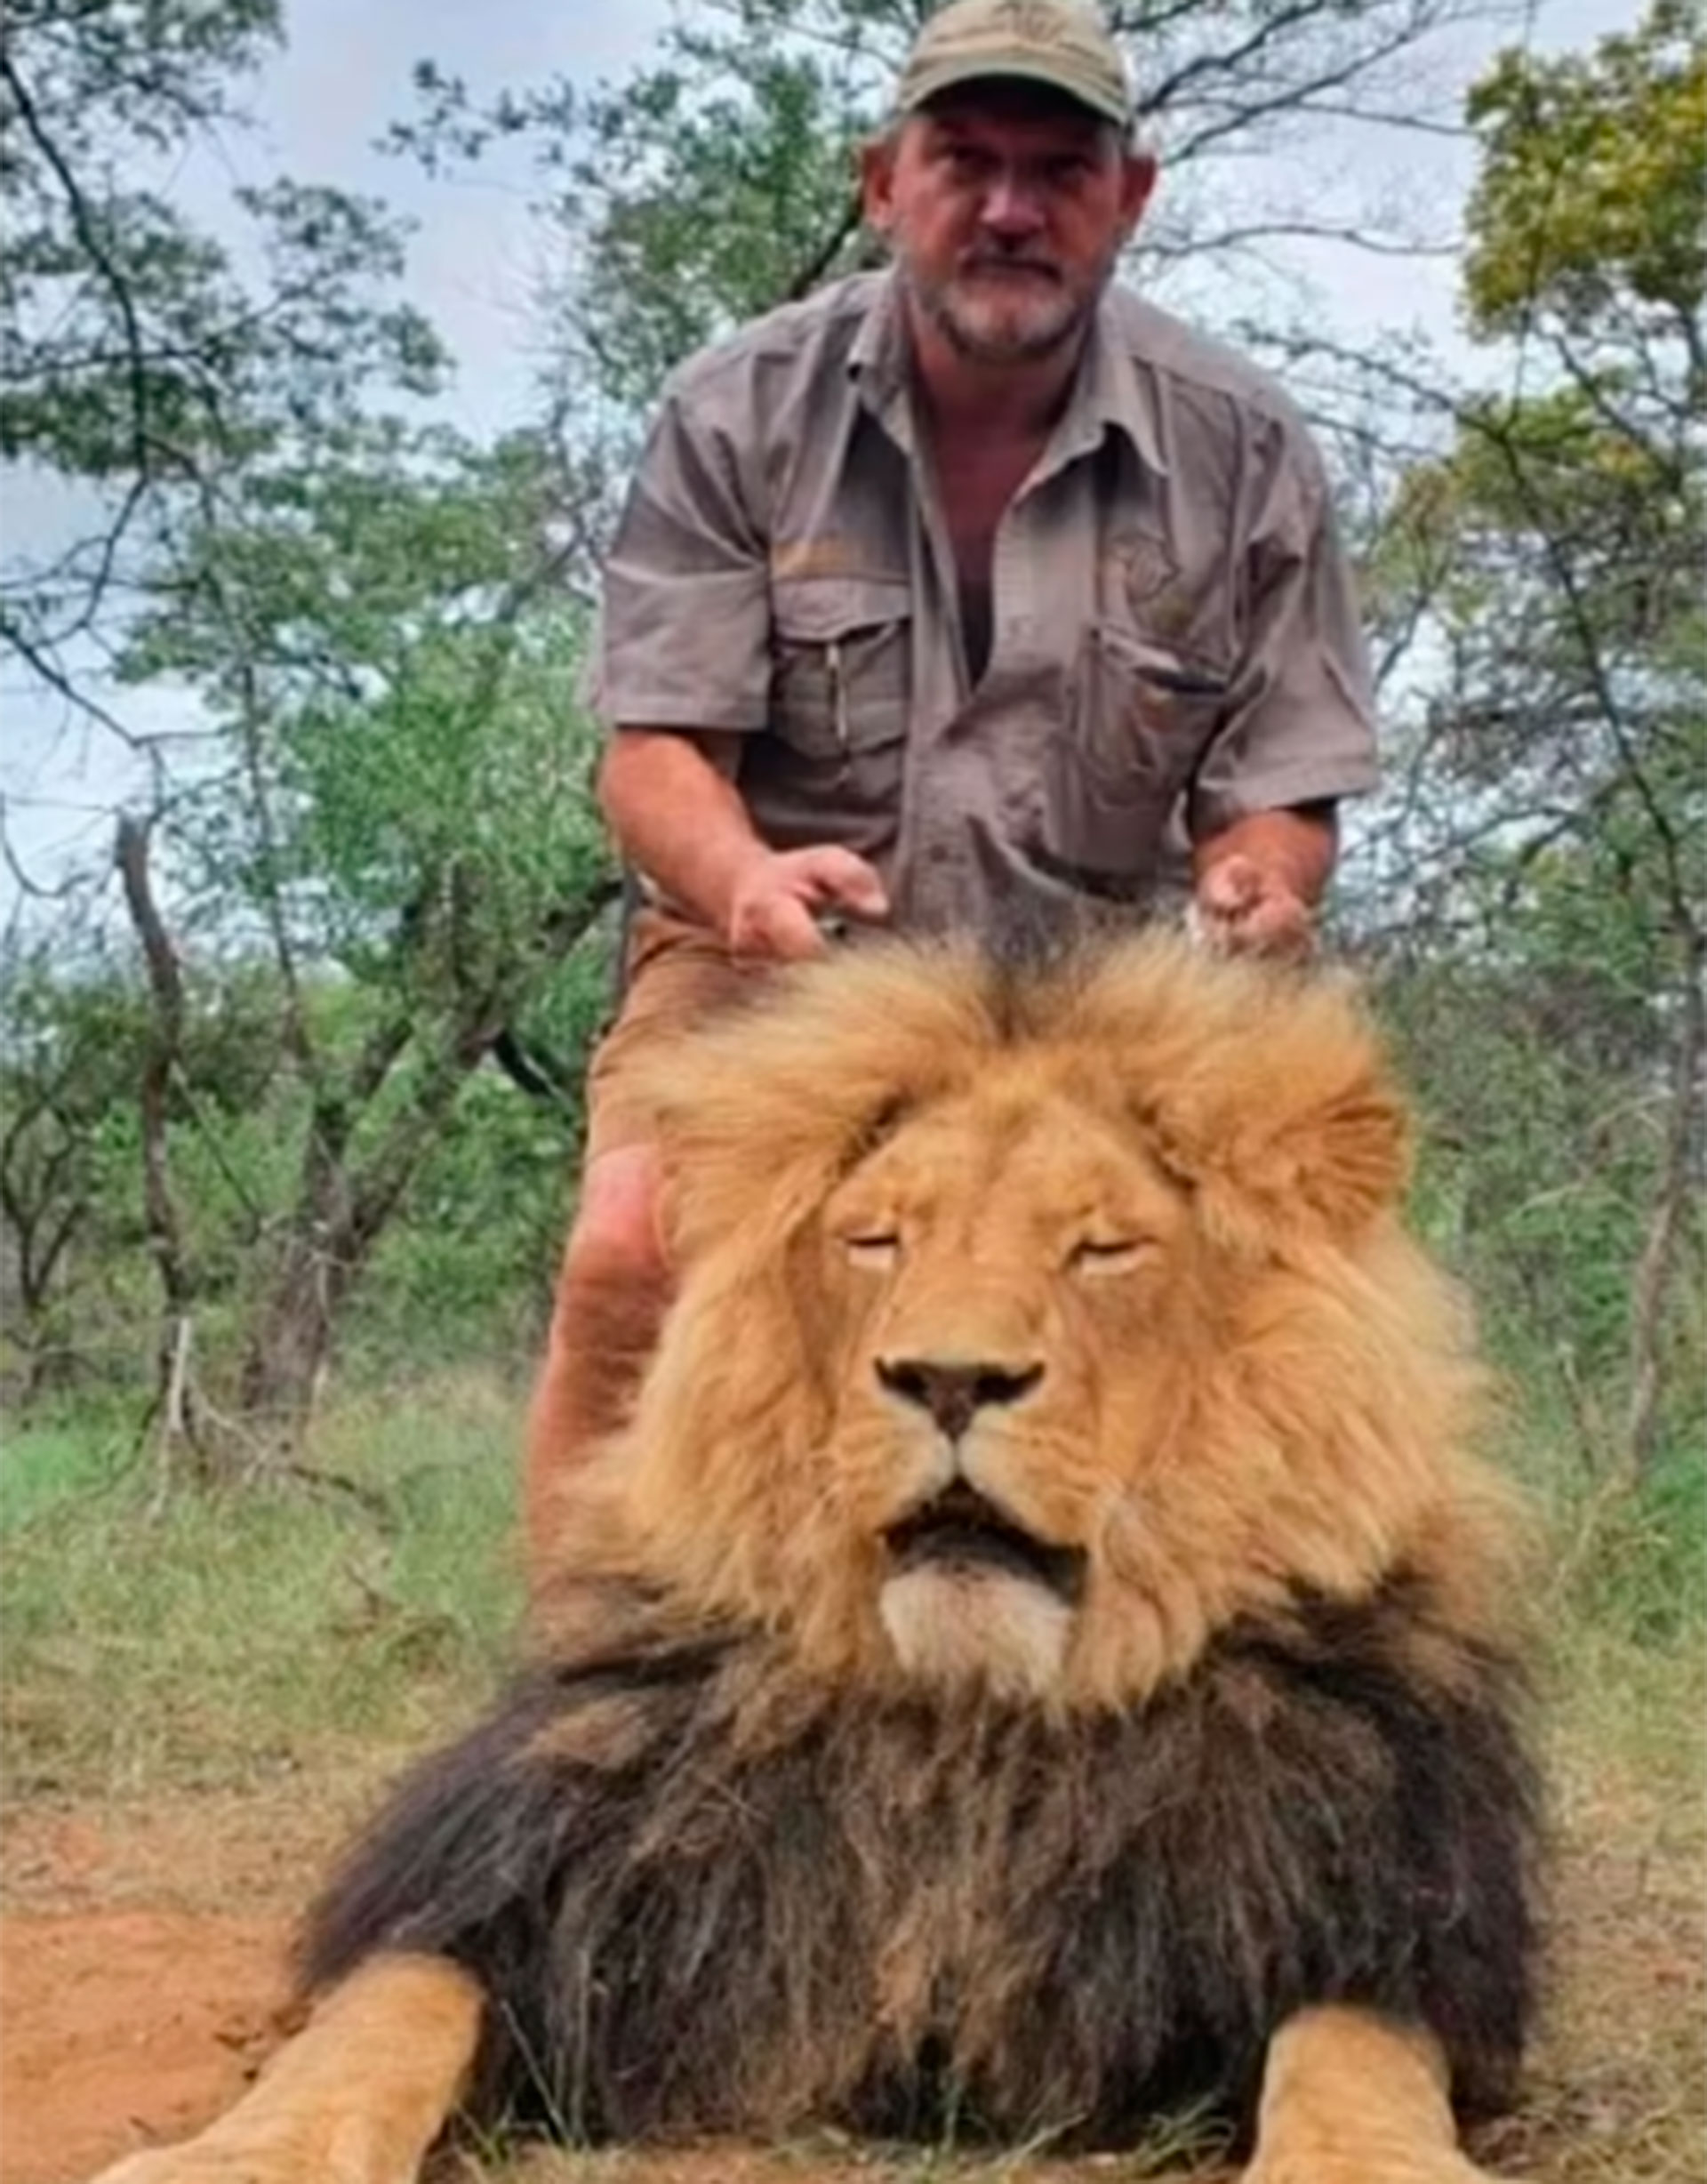 Riaan Naude, de 55 años, dirigía Pro Hunt Africa, una empresa que se definía de “caza ecológica” y ofrecía safaris en el norte de Sudáfrica